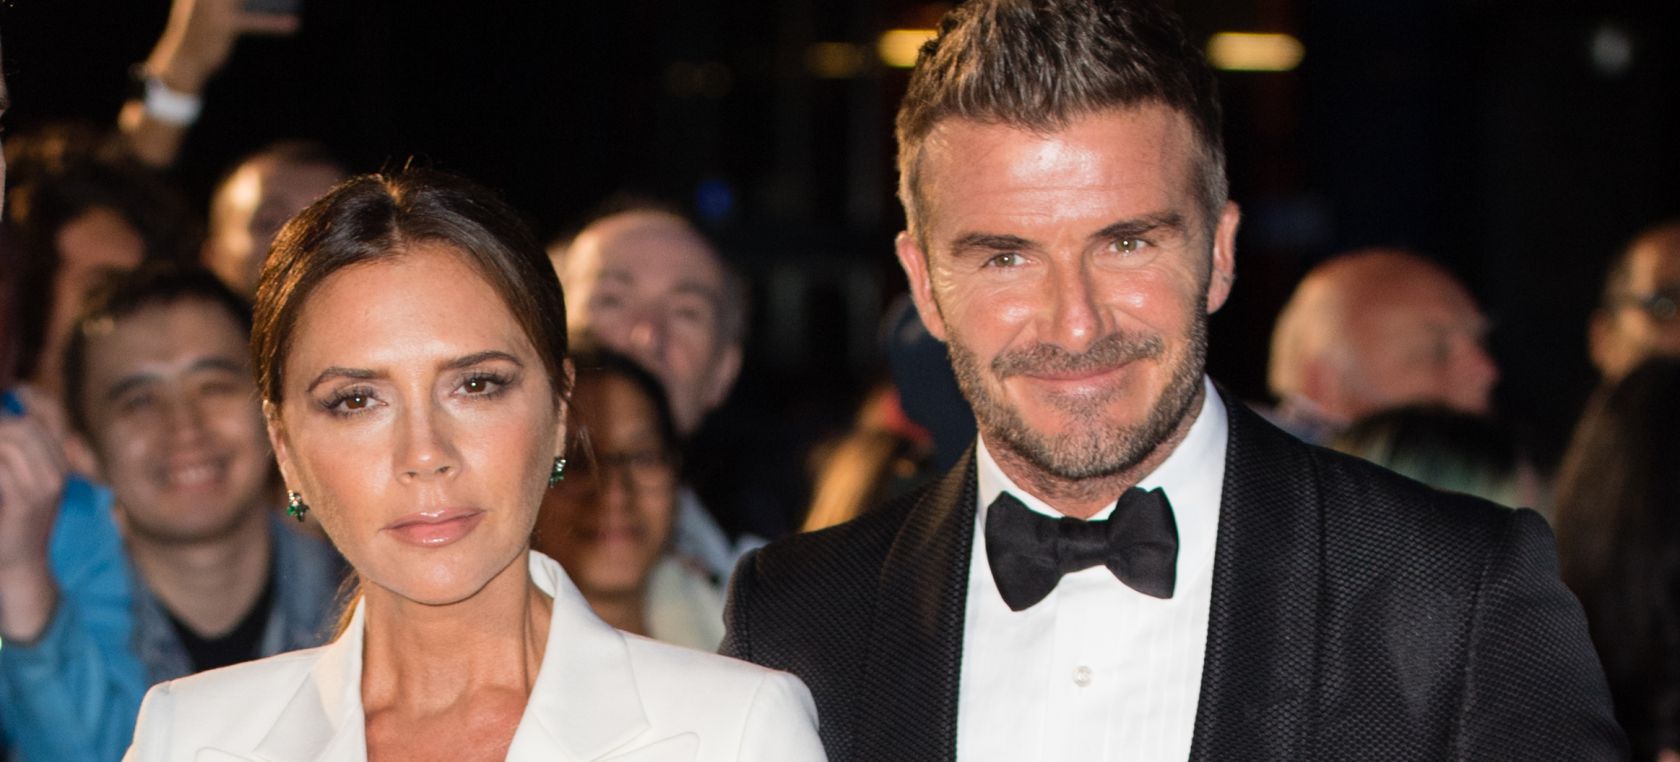 David y Victoria Beckham celebran su 23 aniversario de boda demostrando su amor: “dijeron que no duraría”